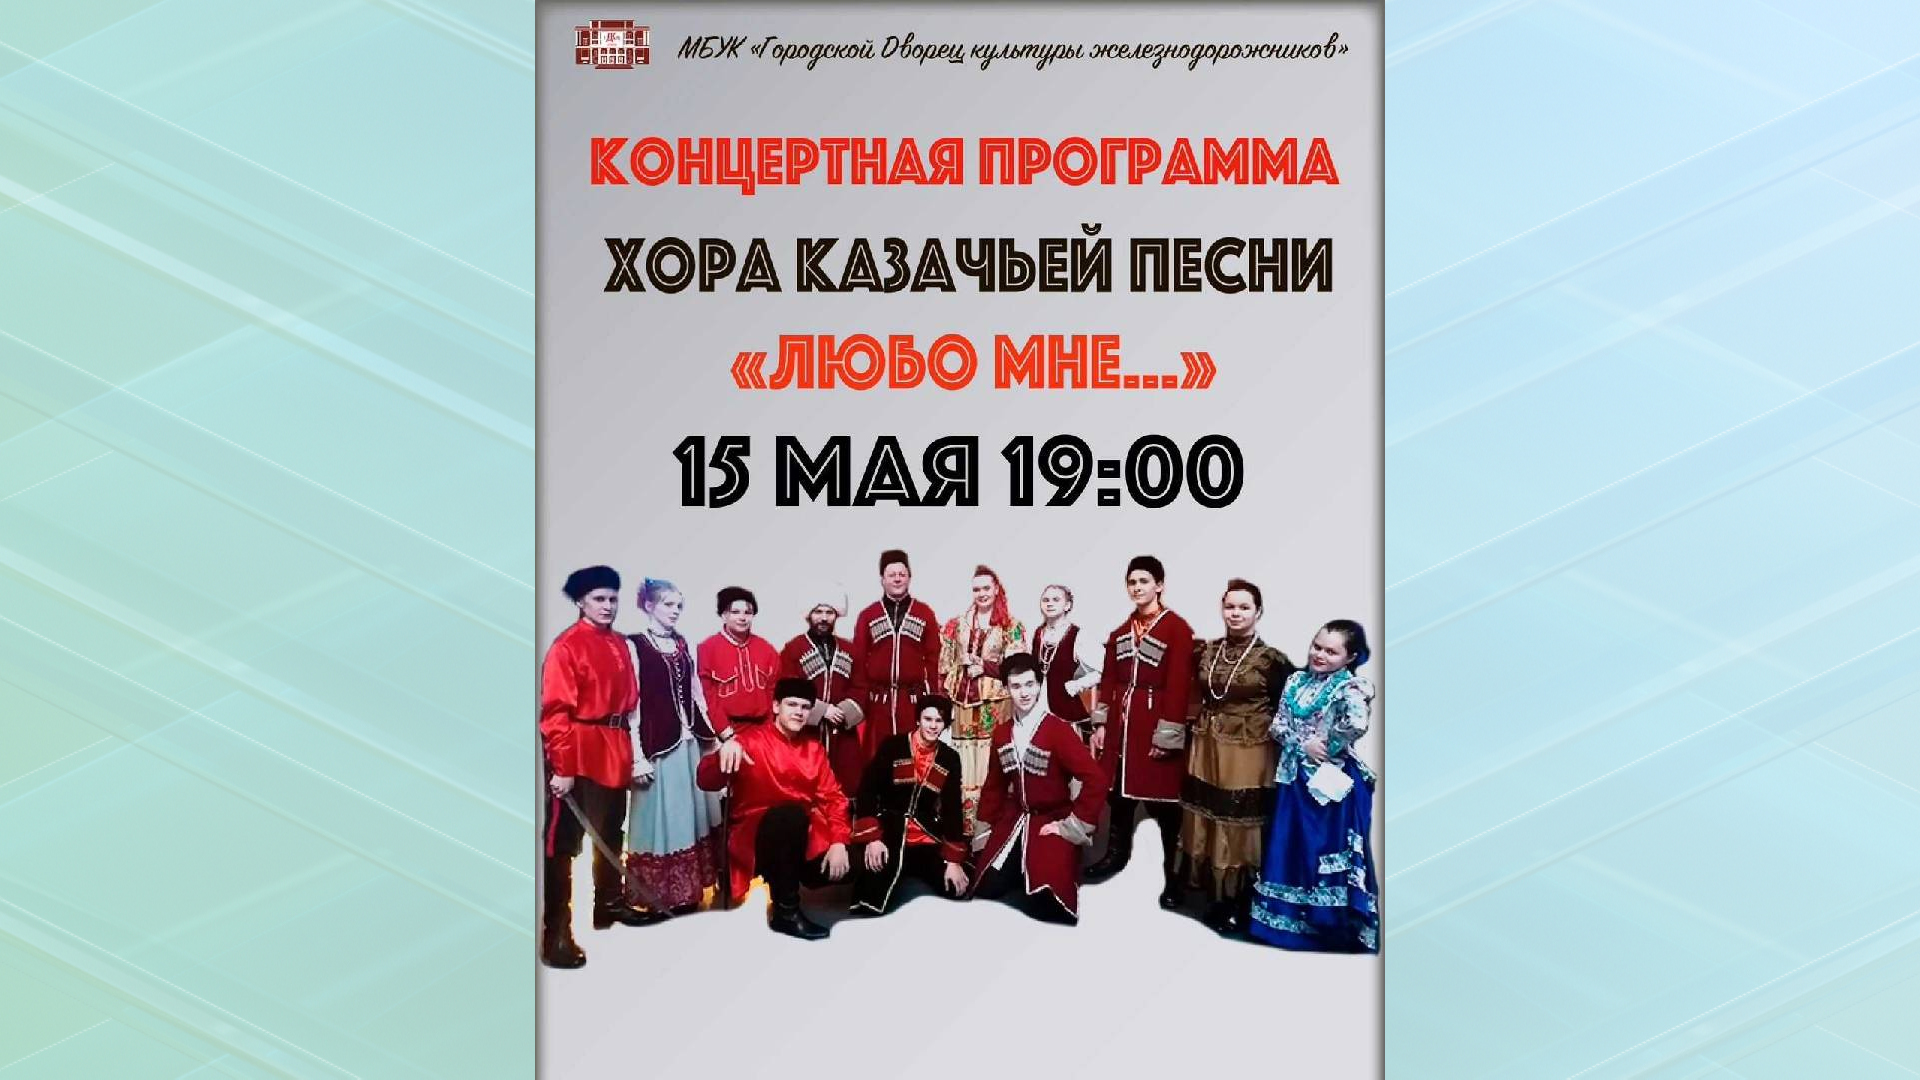 В Брянске 15 мая пройдёт концерт казачьей песни "Любо мне"